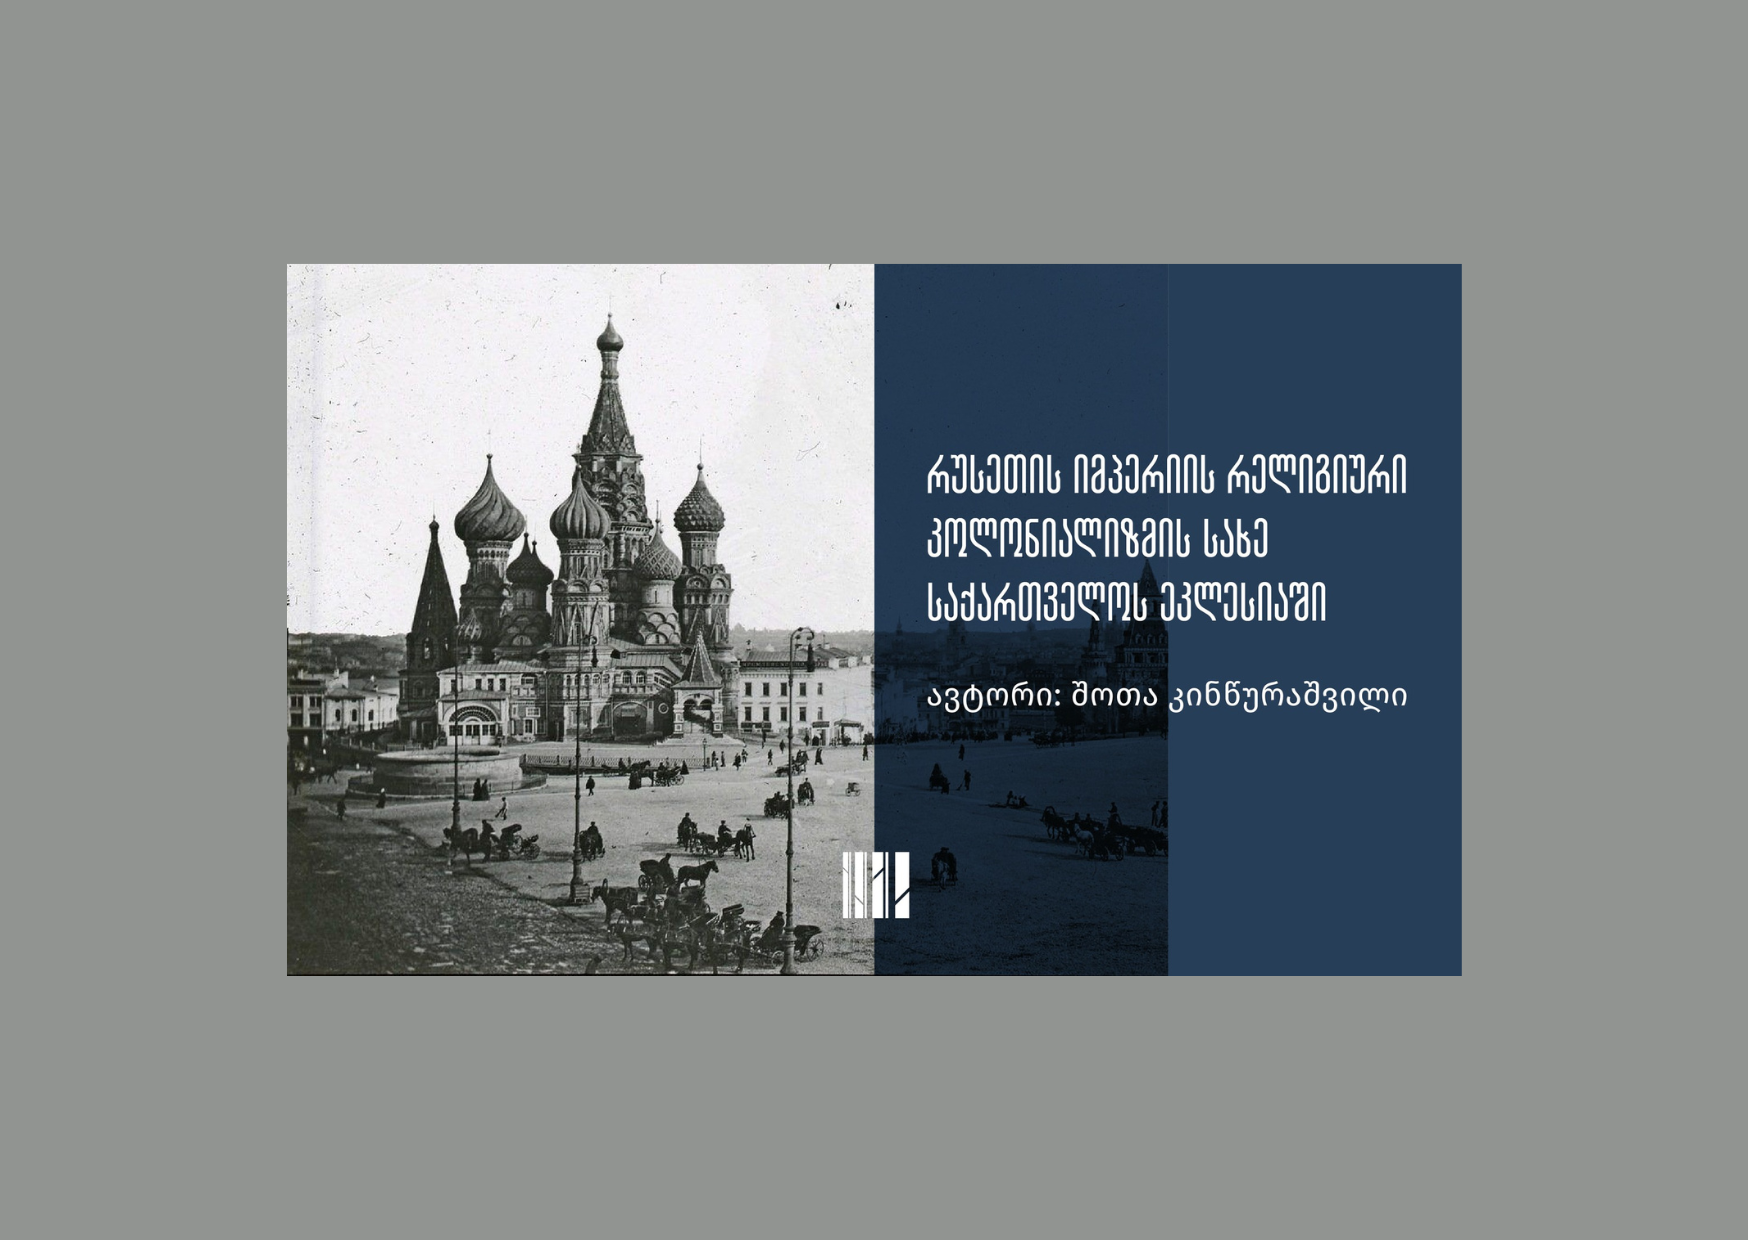 რუსეთის იმპერია და რელიგიური კოლონიალიზმი